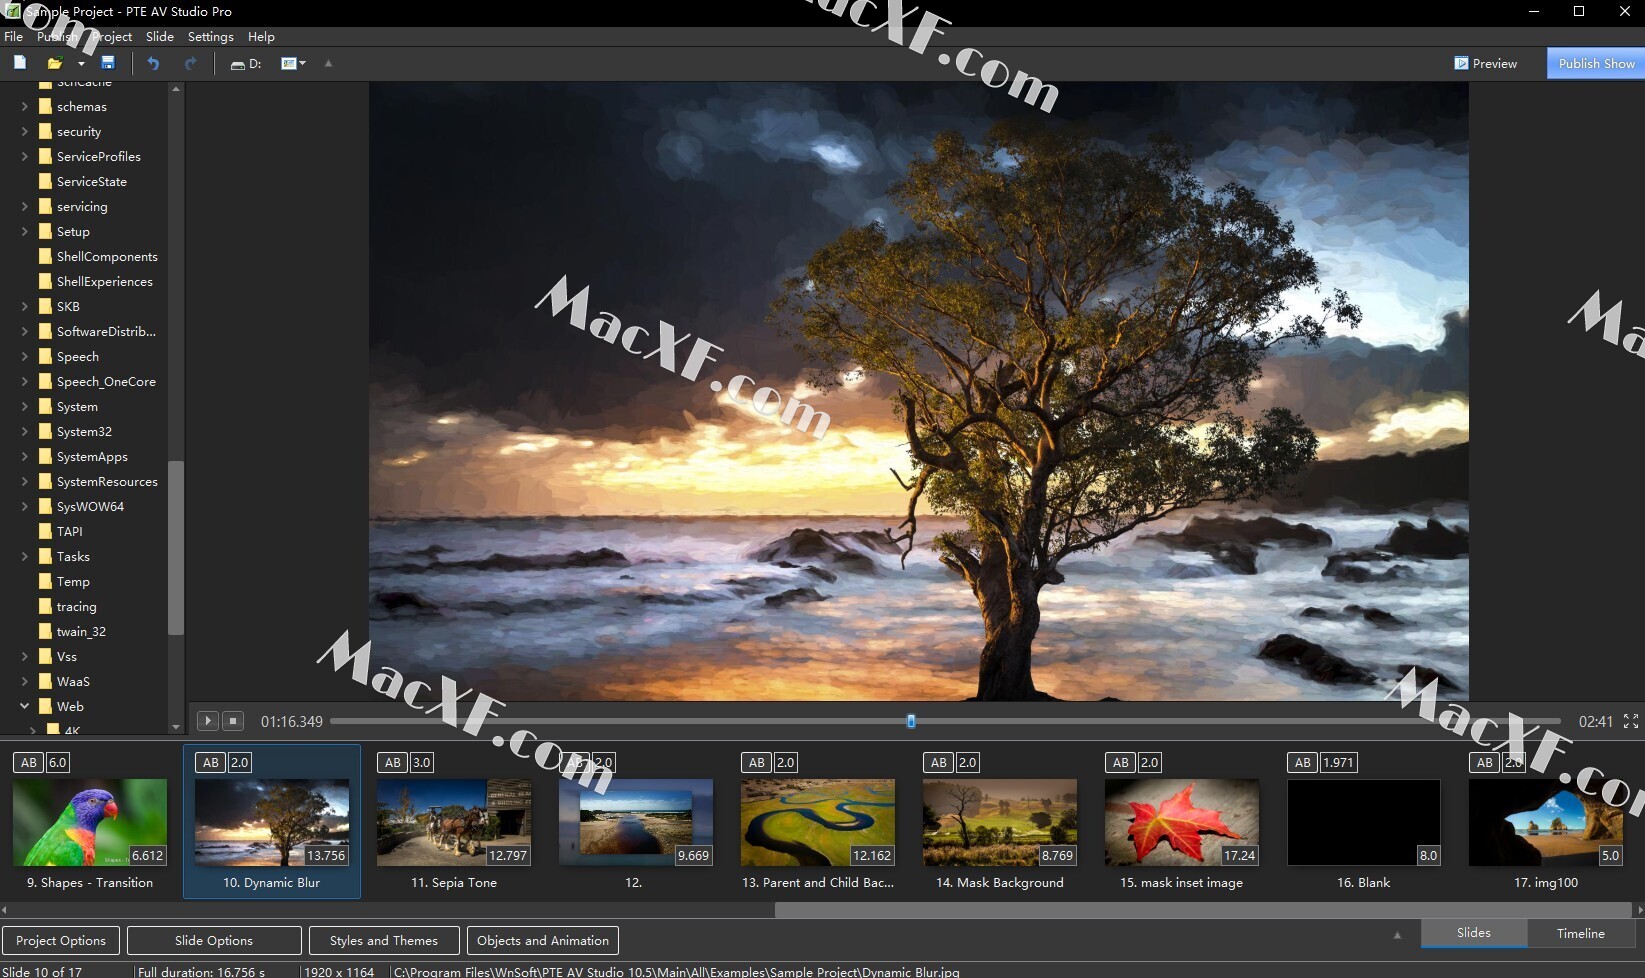 PTE AV Studio Pro 11.0.9.1 for mac download